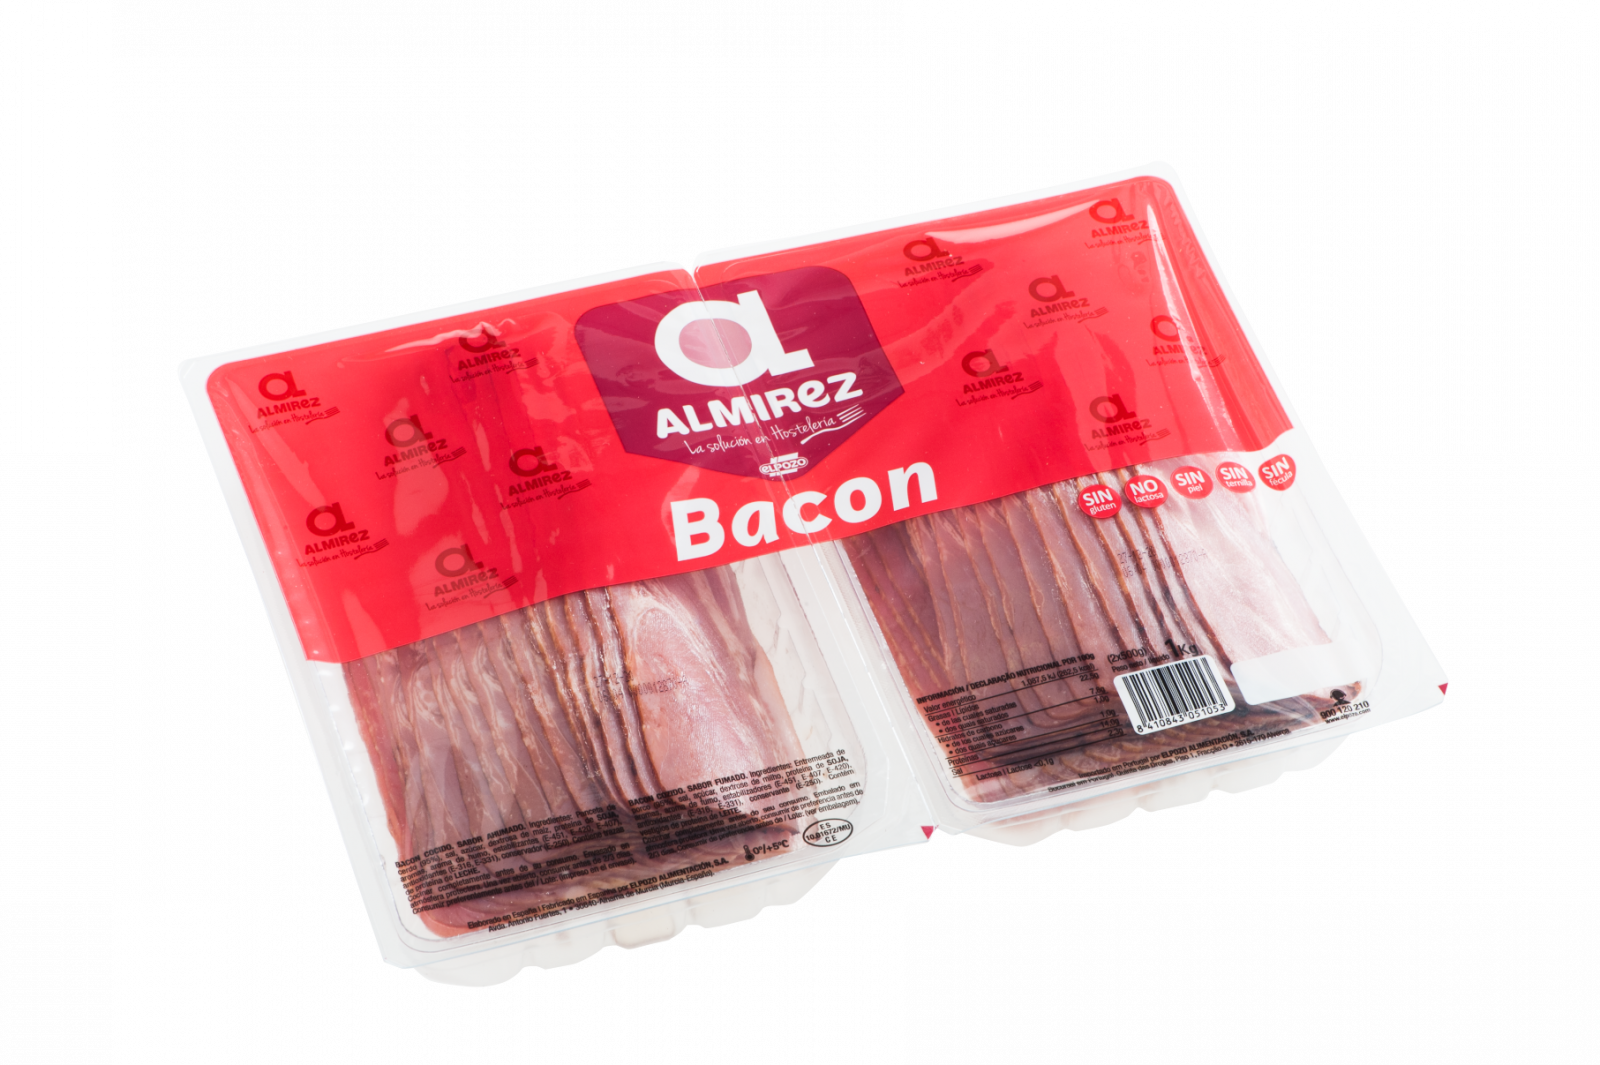 Bacon precio Mercadona: Descubre la mejor opción para disfrutar de deliciosas lonchas de bacon al mejor precio en Mercadona